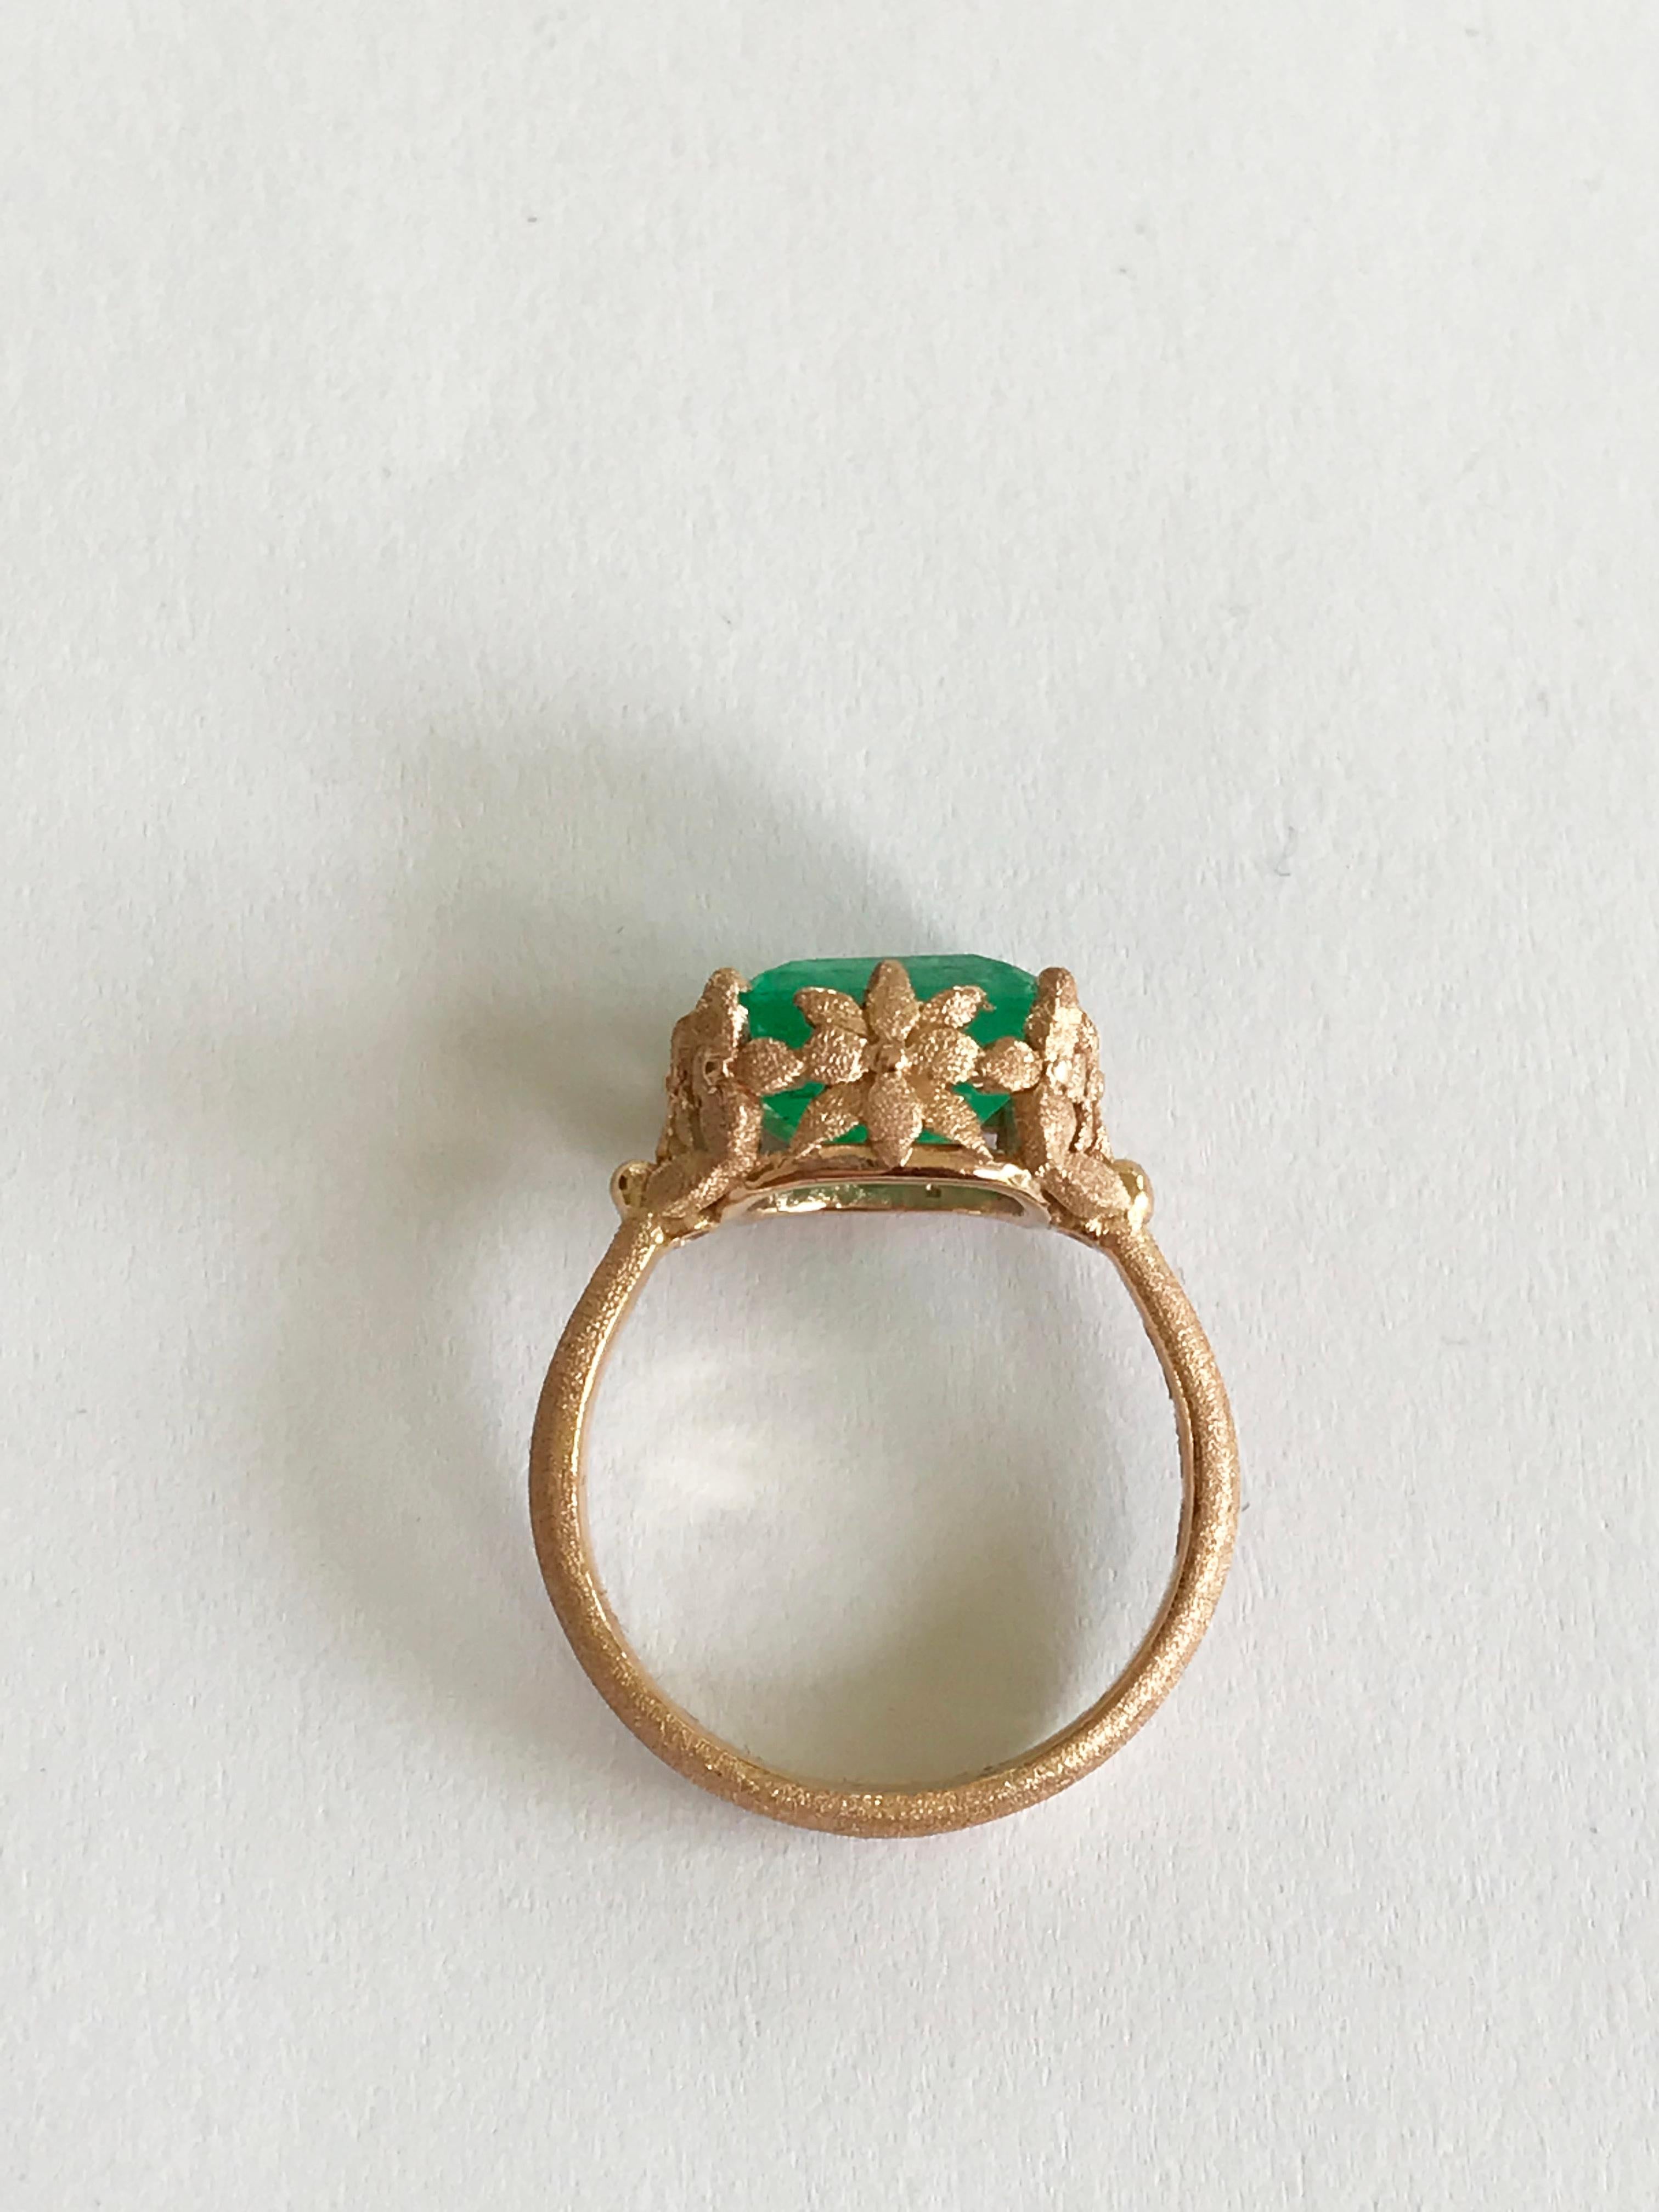 Dalben 3.57 Carat Emerald Cut Emerald Rose Gold Ring For Sale 5